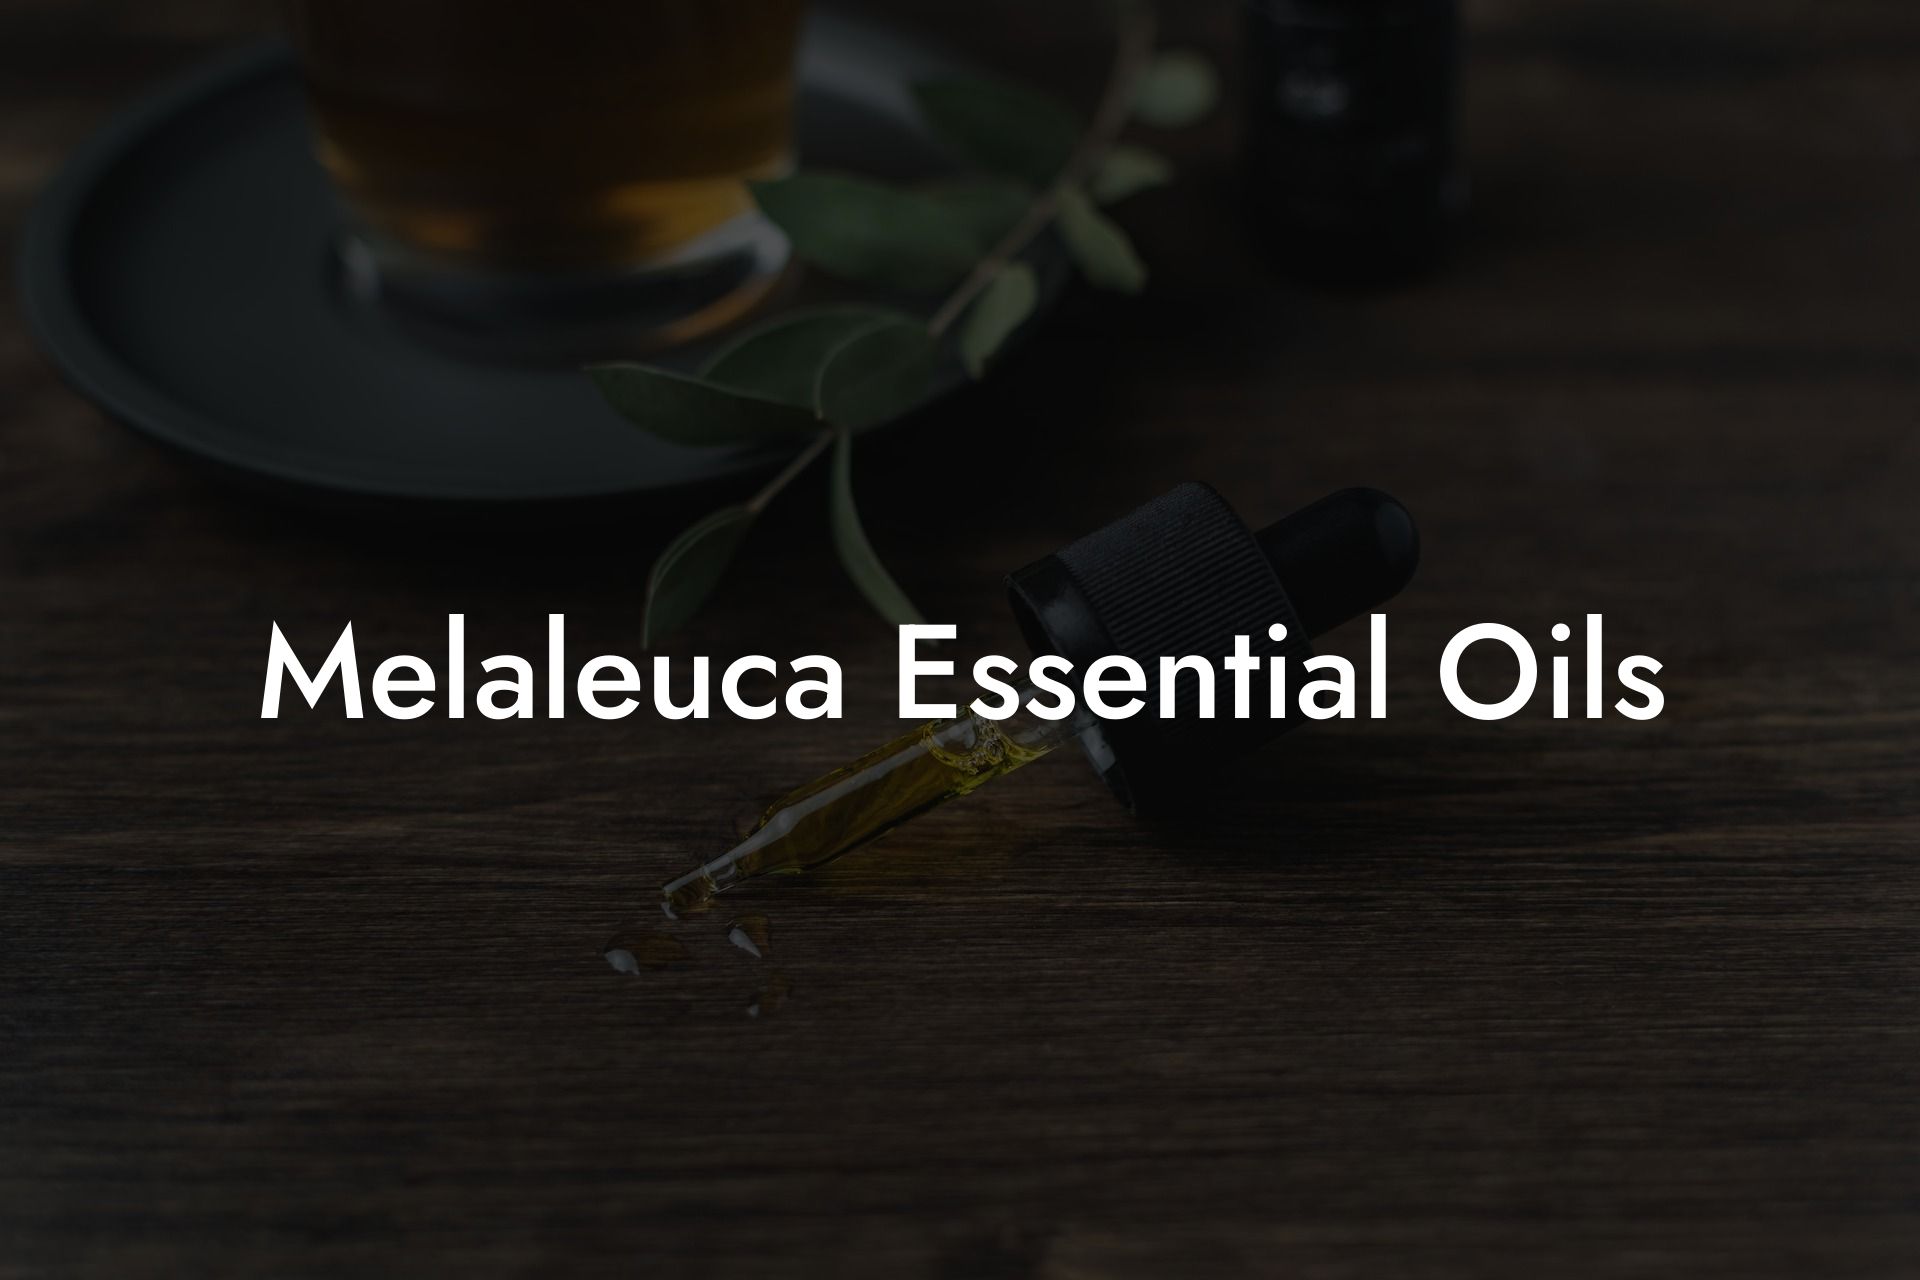 Melaleuca Essential Oils